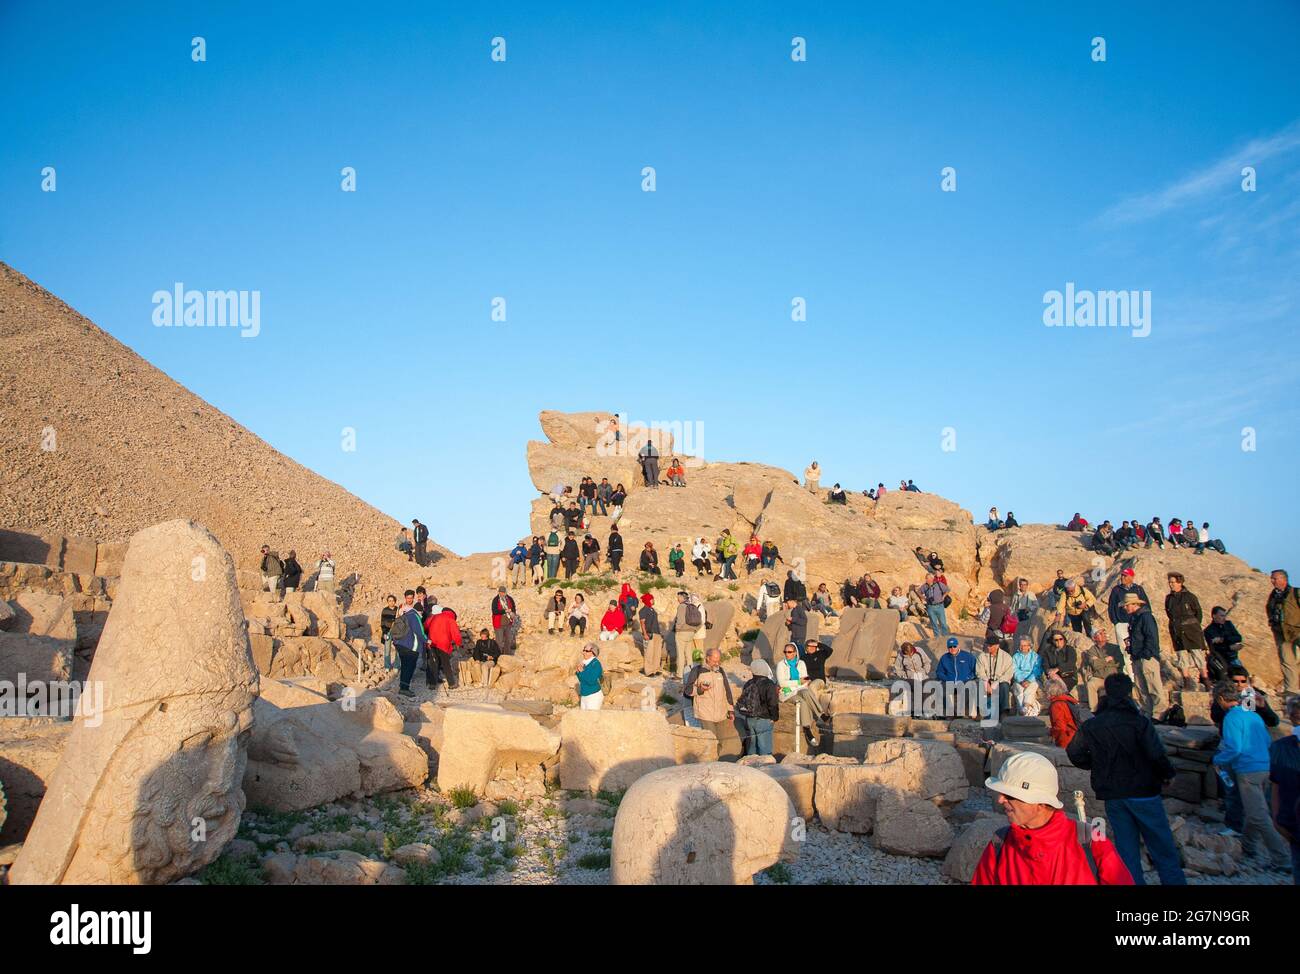 Adiyaman / Turquie - 05/29/2010: Les touristes locaux et étrangers regardent le soleil se lever et vont à la pente de montagne pour voir les ruines antiques. Banque D'Images